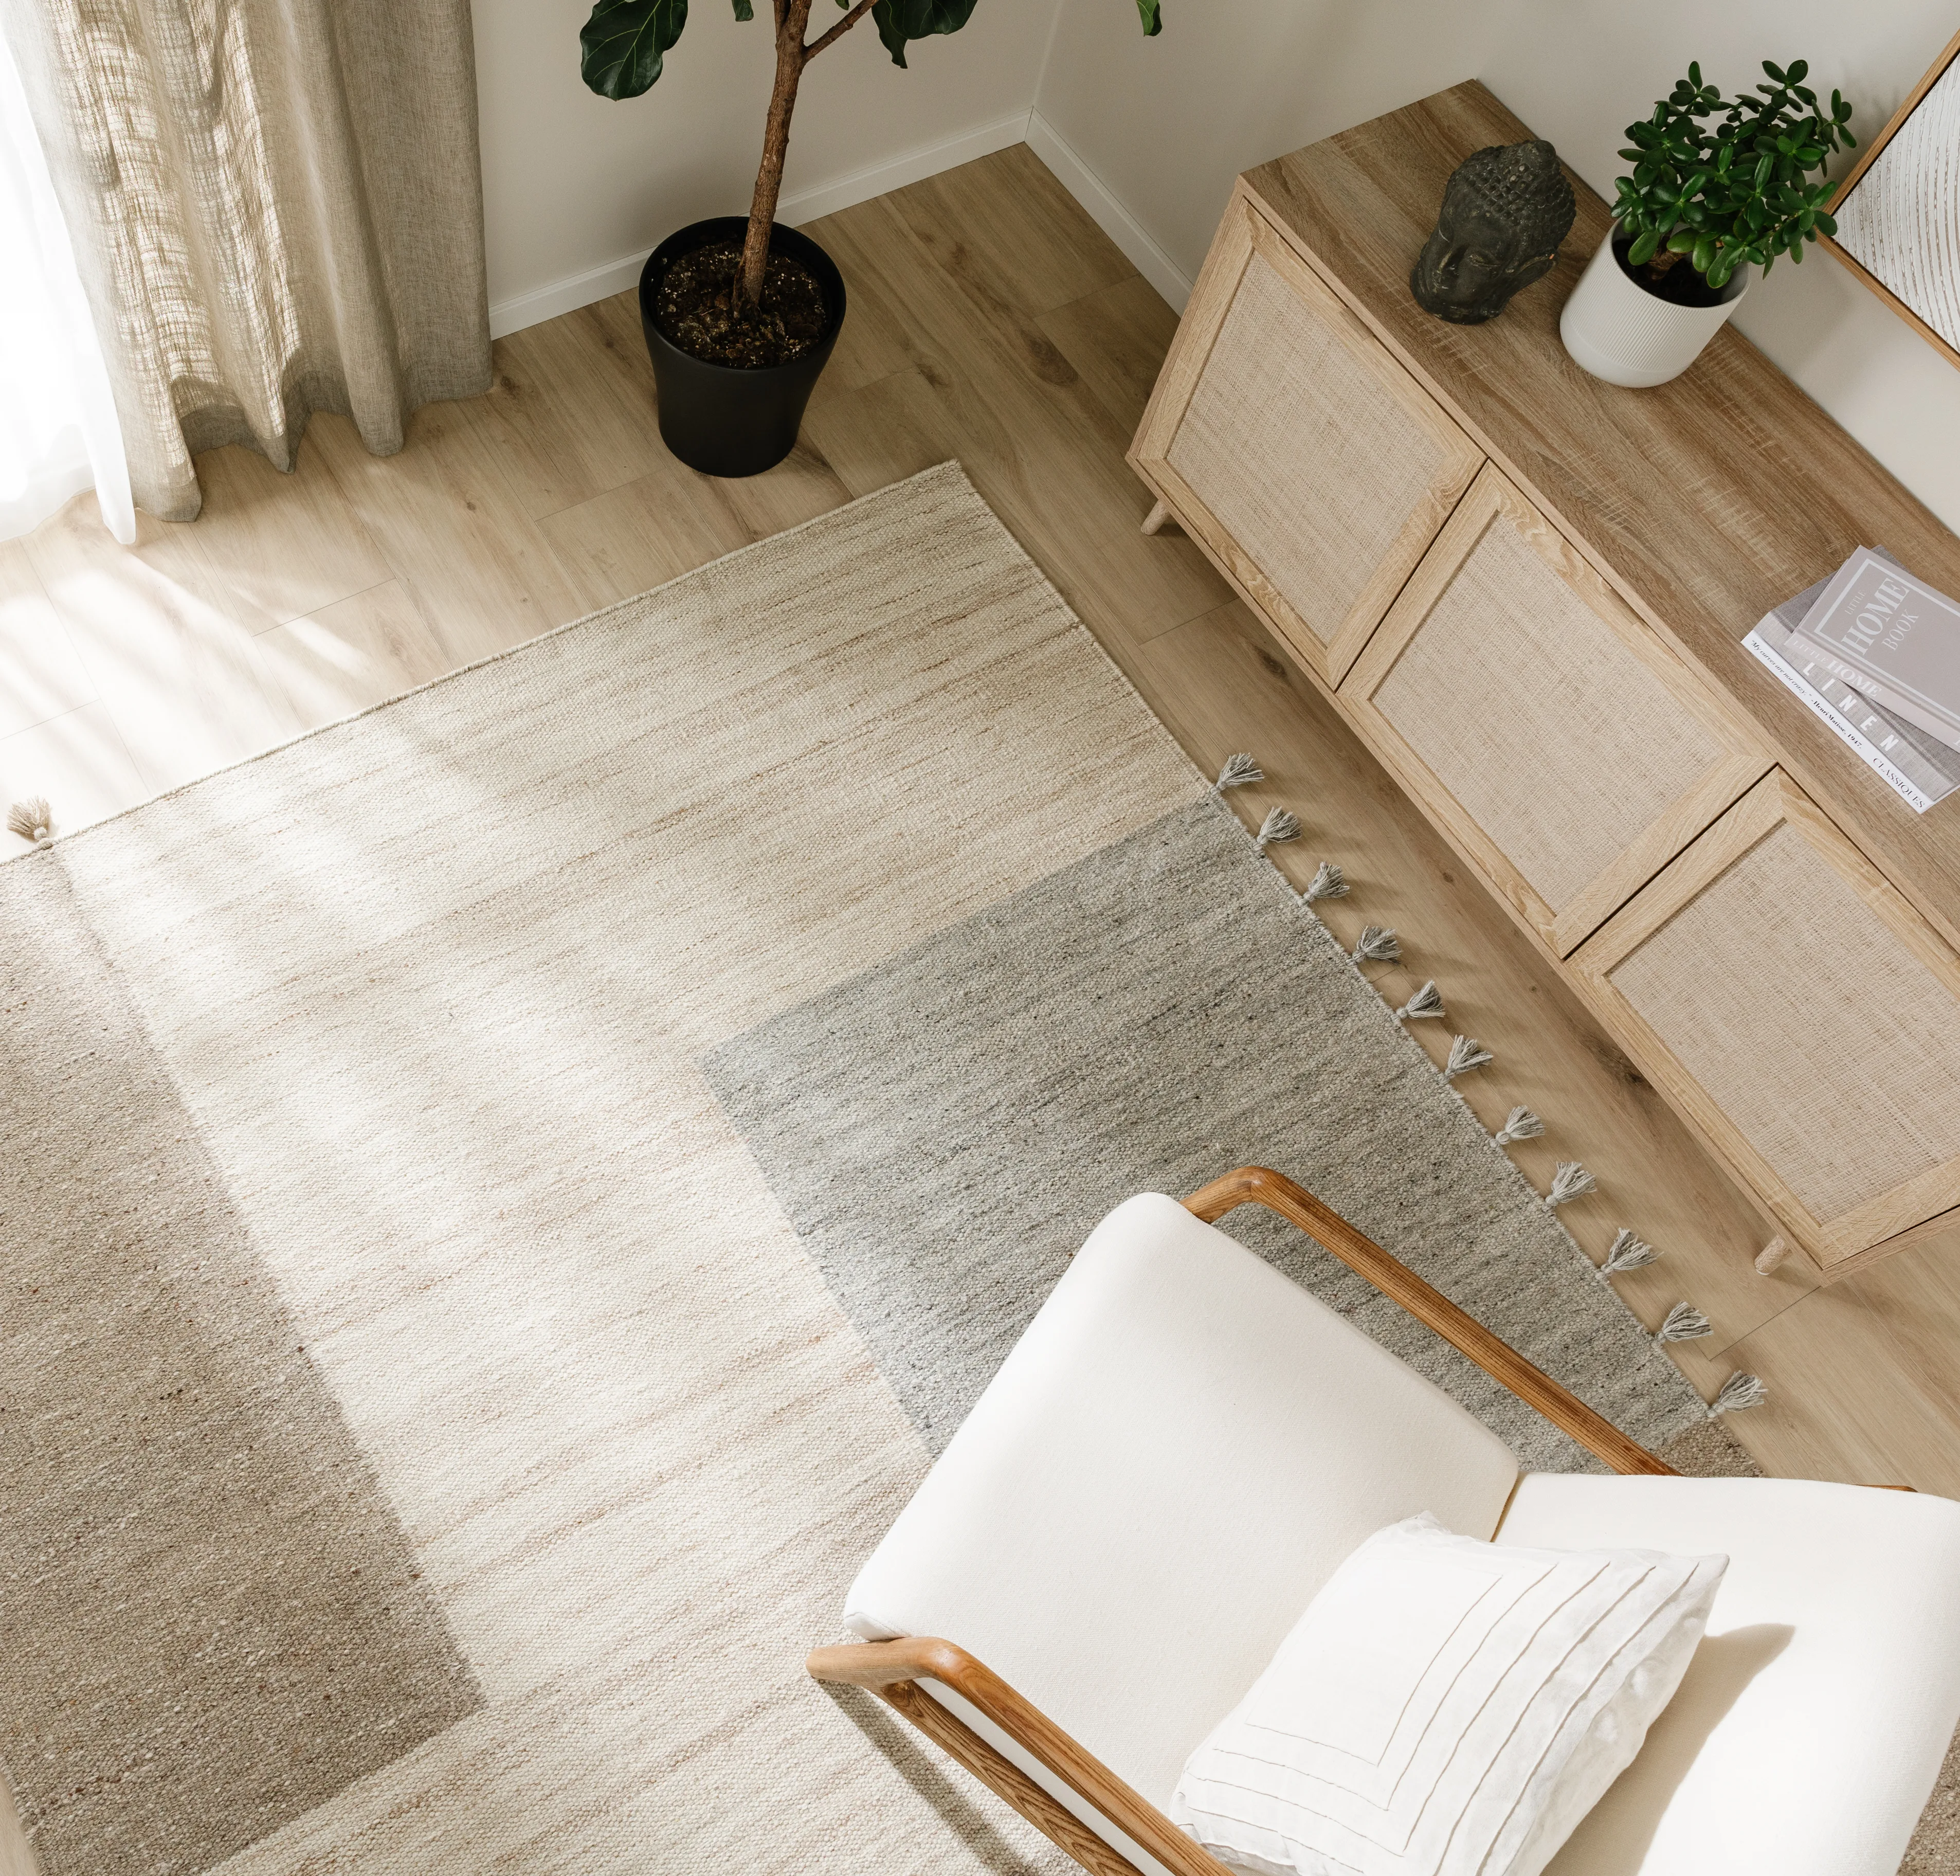 Skandinavisch eingerichtetes Wohnzimmer mit Teppich, Sessel und Sideboard in hellen und natürlichen Tönen